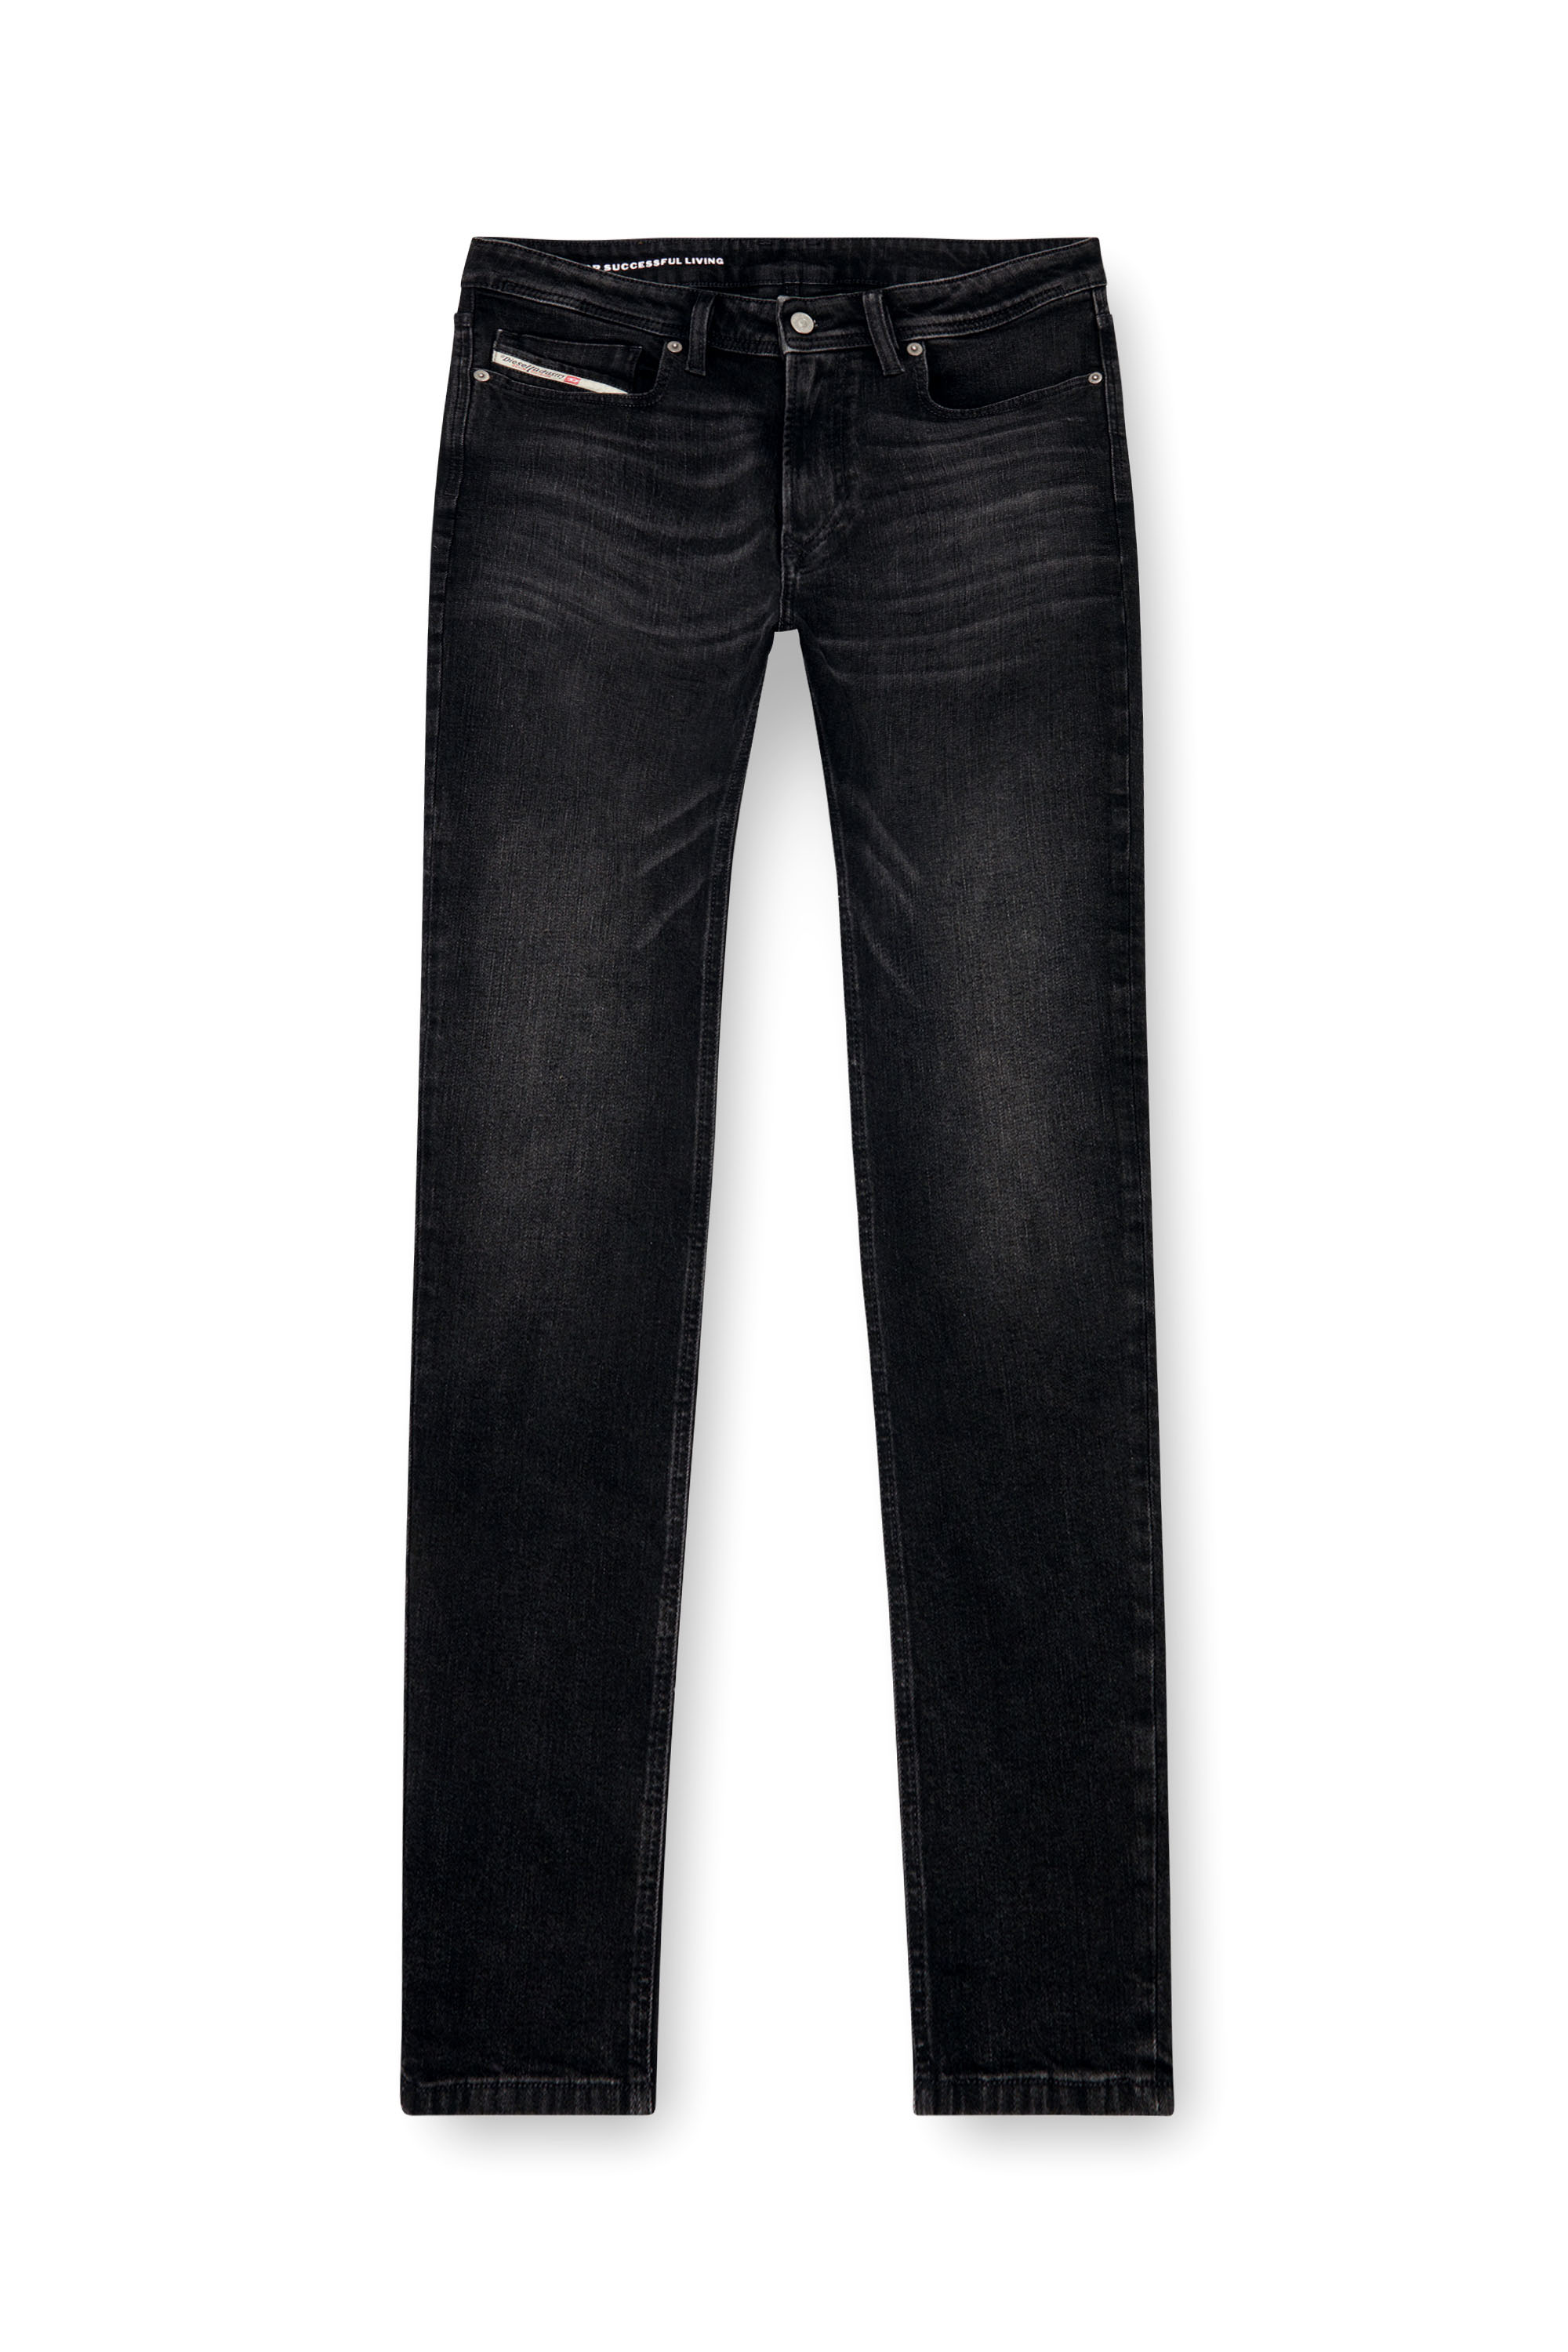 Diesel - Skinny Jeans 1979 Sleenker 0GRDA, Black/Dark grey - Image 3